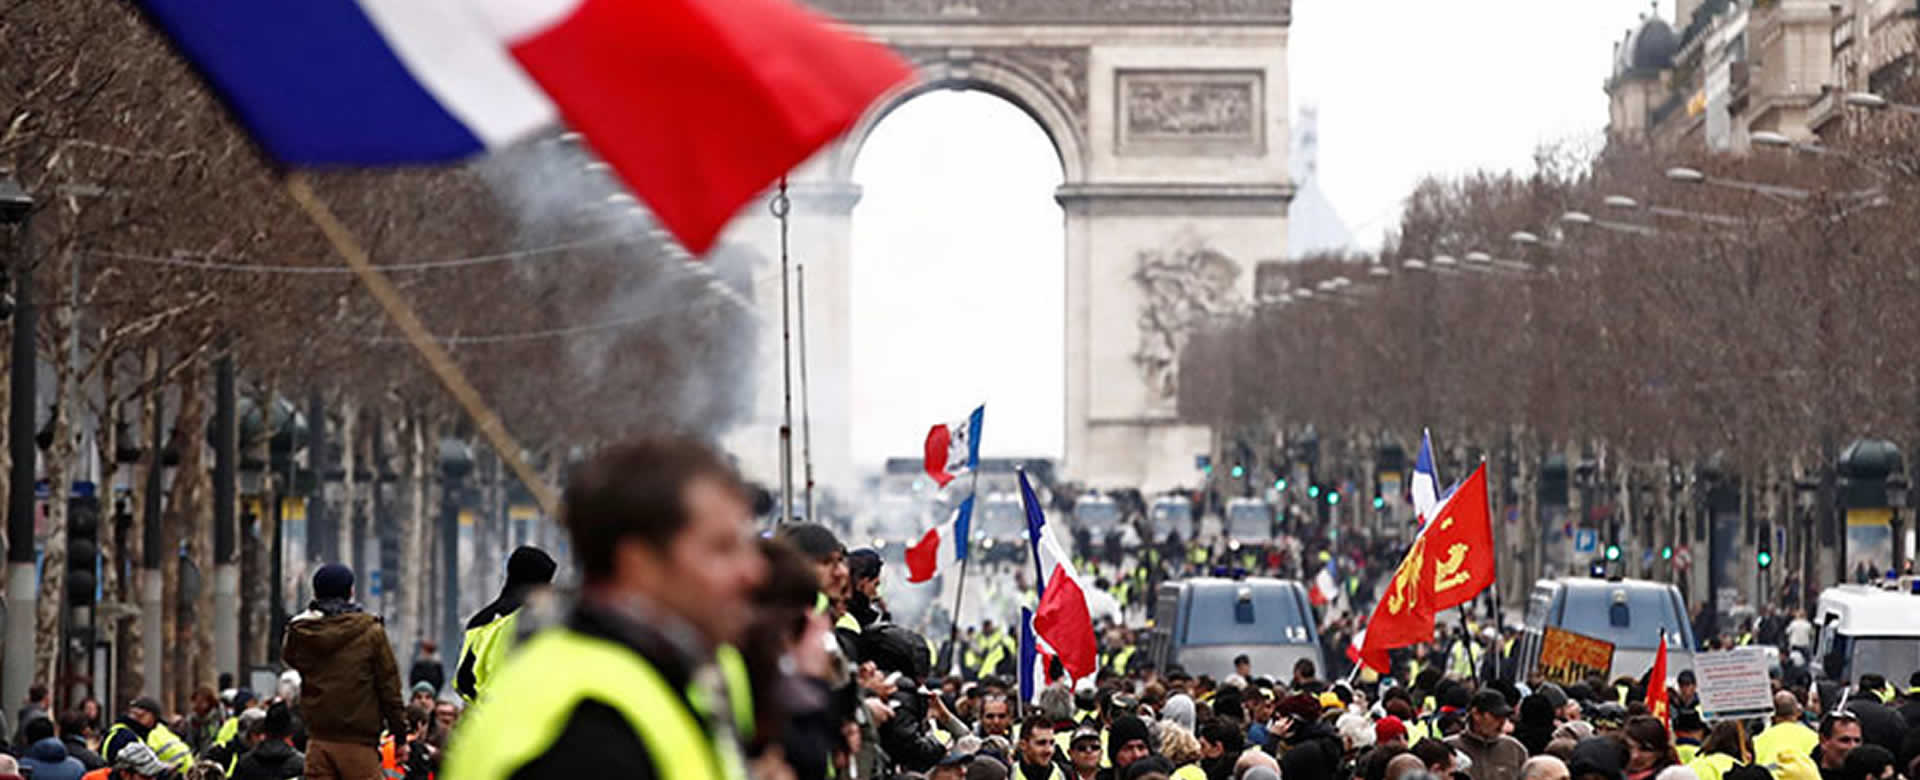 Francia prohibirá las protestas de los 'chalecos amarillos' en caso de que asistan violentos